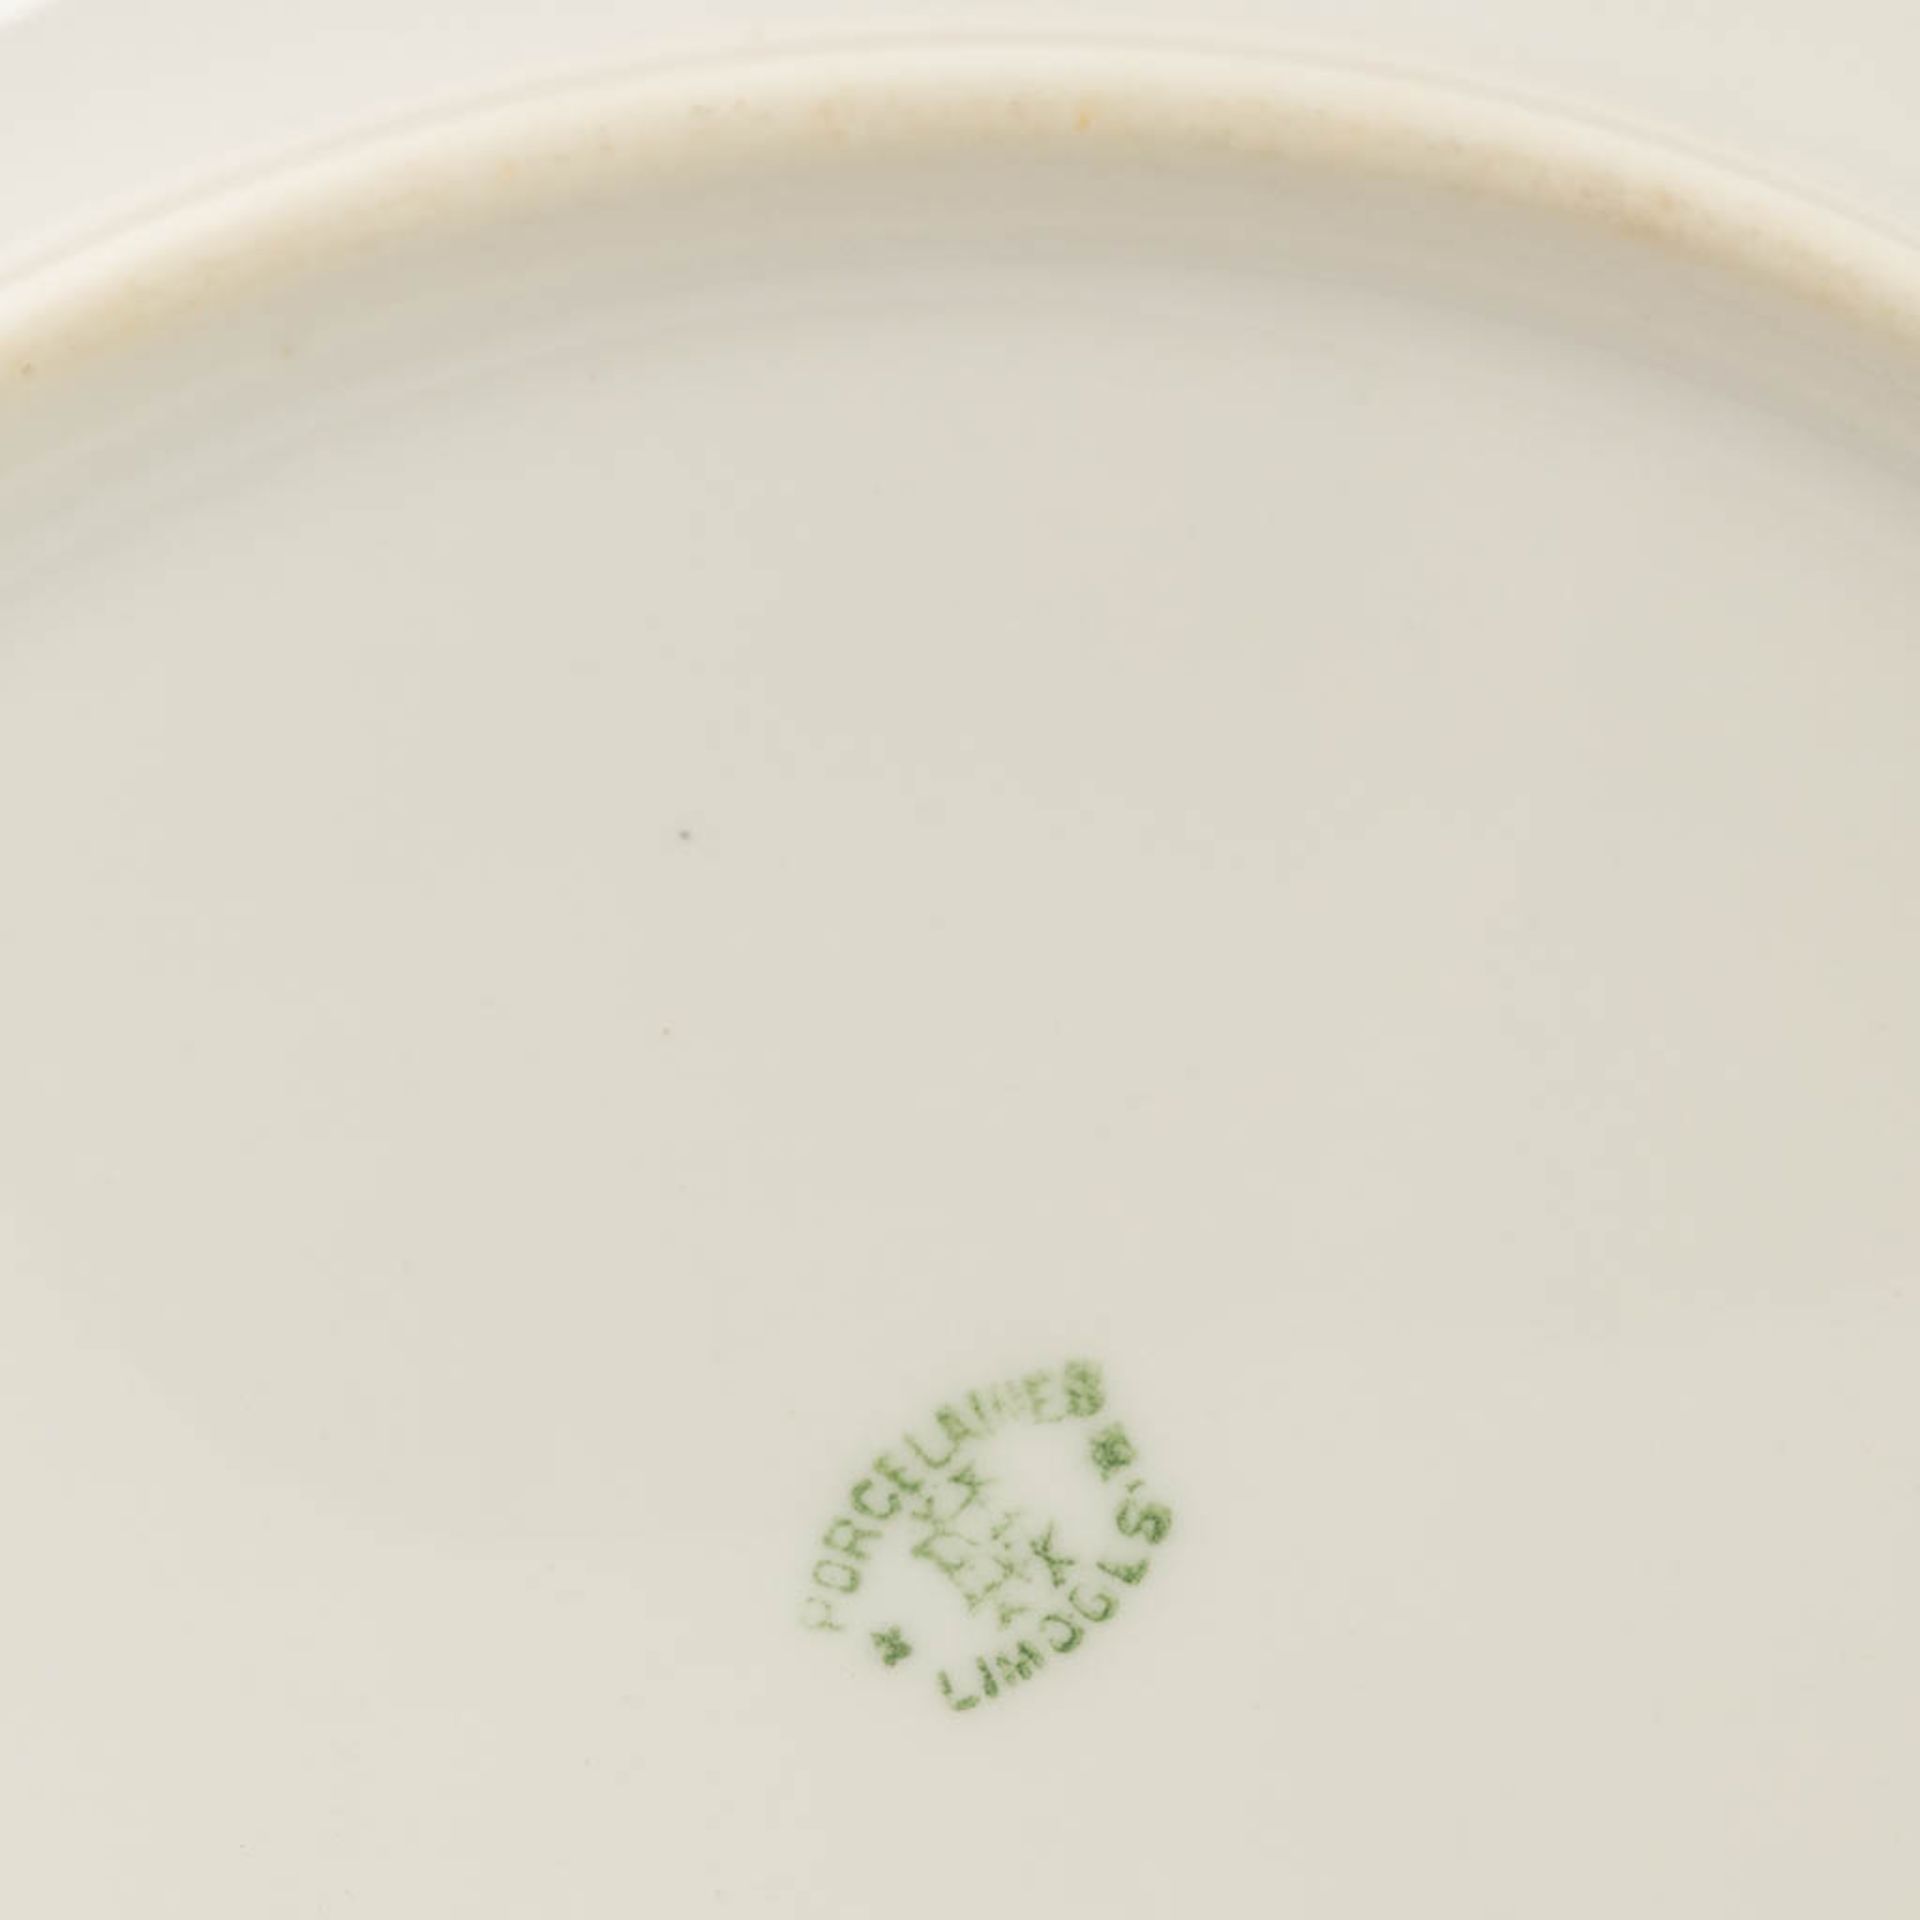 Porcelaine De Limoges, a 77 piece large dinner service. (L: 29 x W: 44 cm) - Image 5 of 20